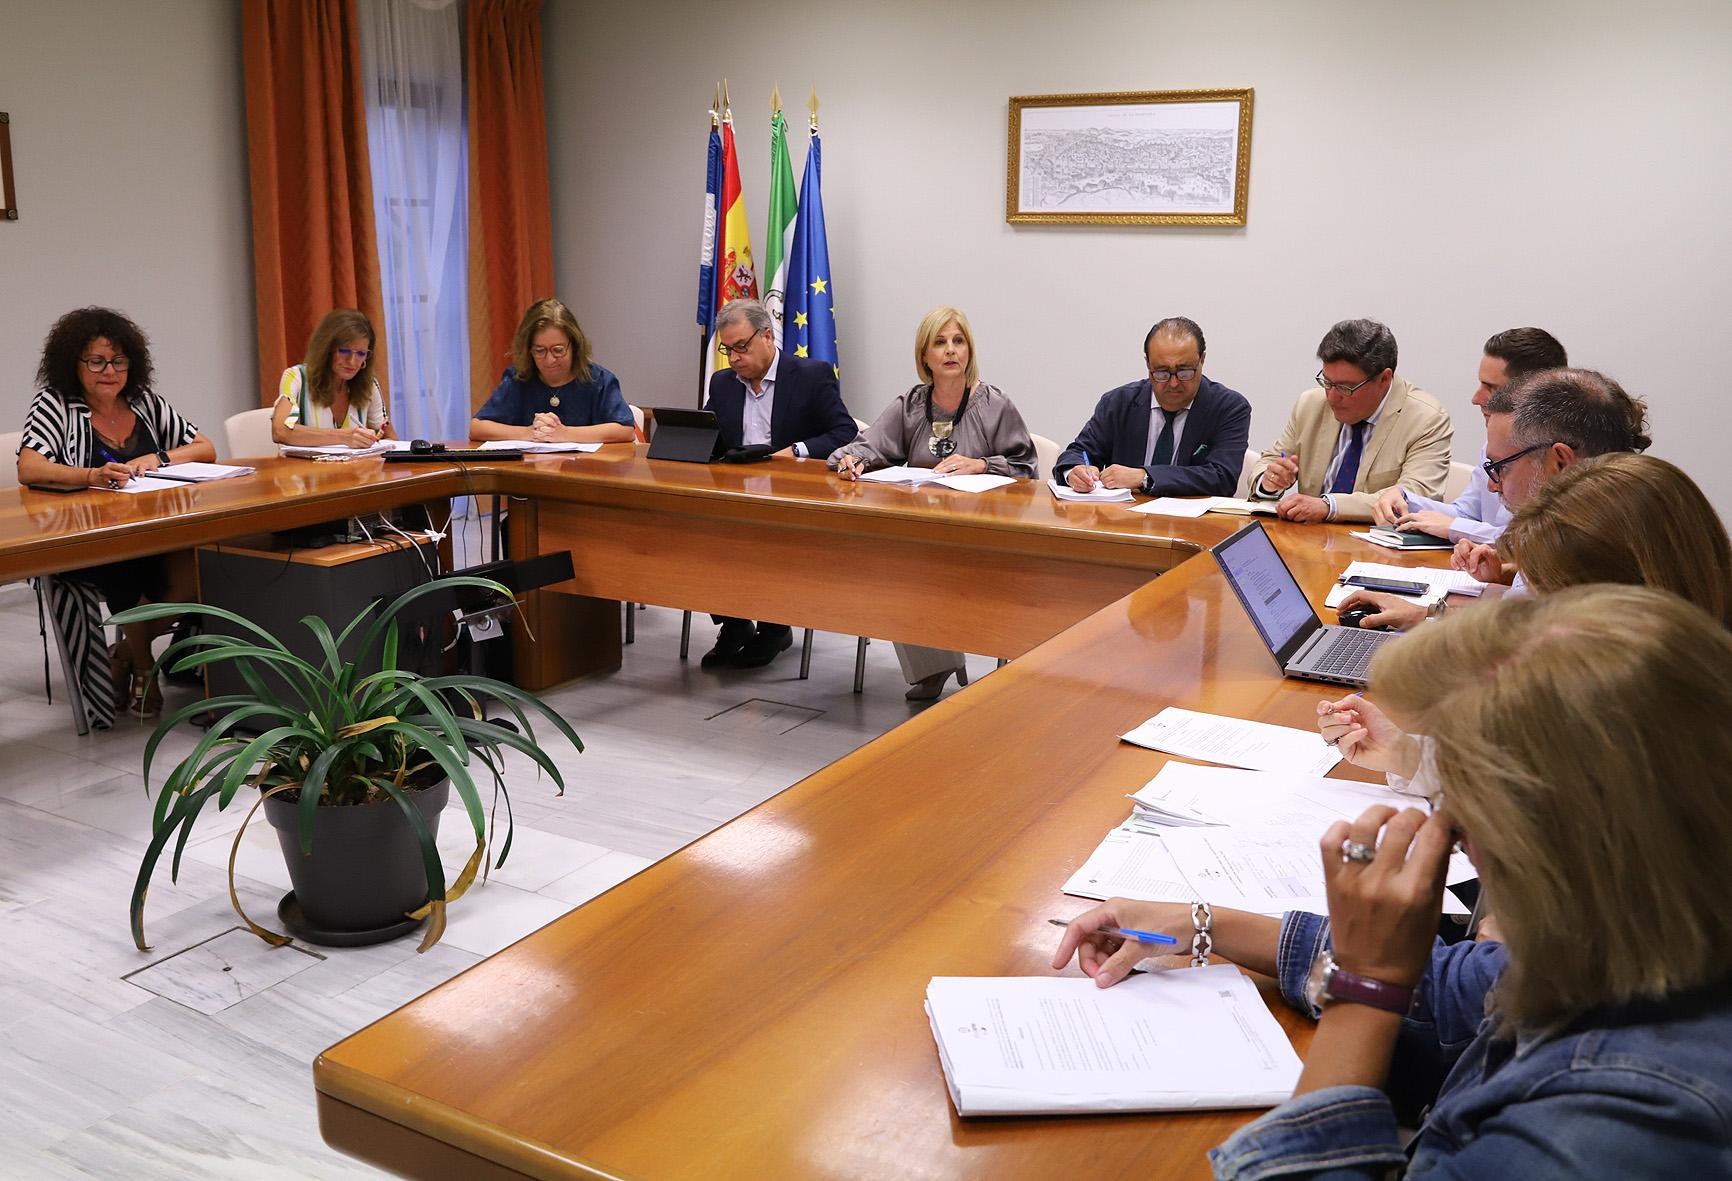 El Gobierno de Jerez cumple su compromiso y abrirá permanentemente el Museo del Belén desde octubre